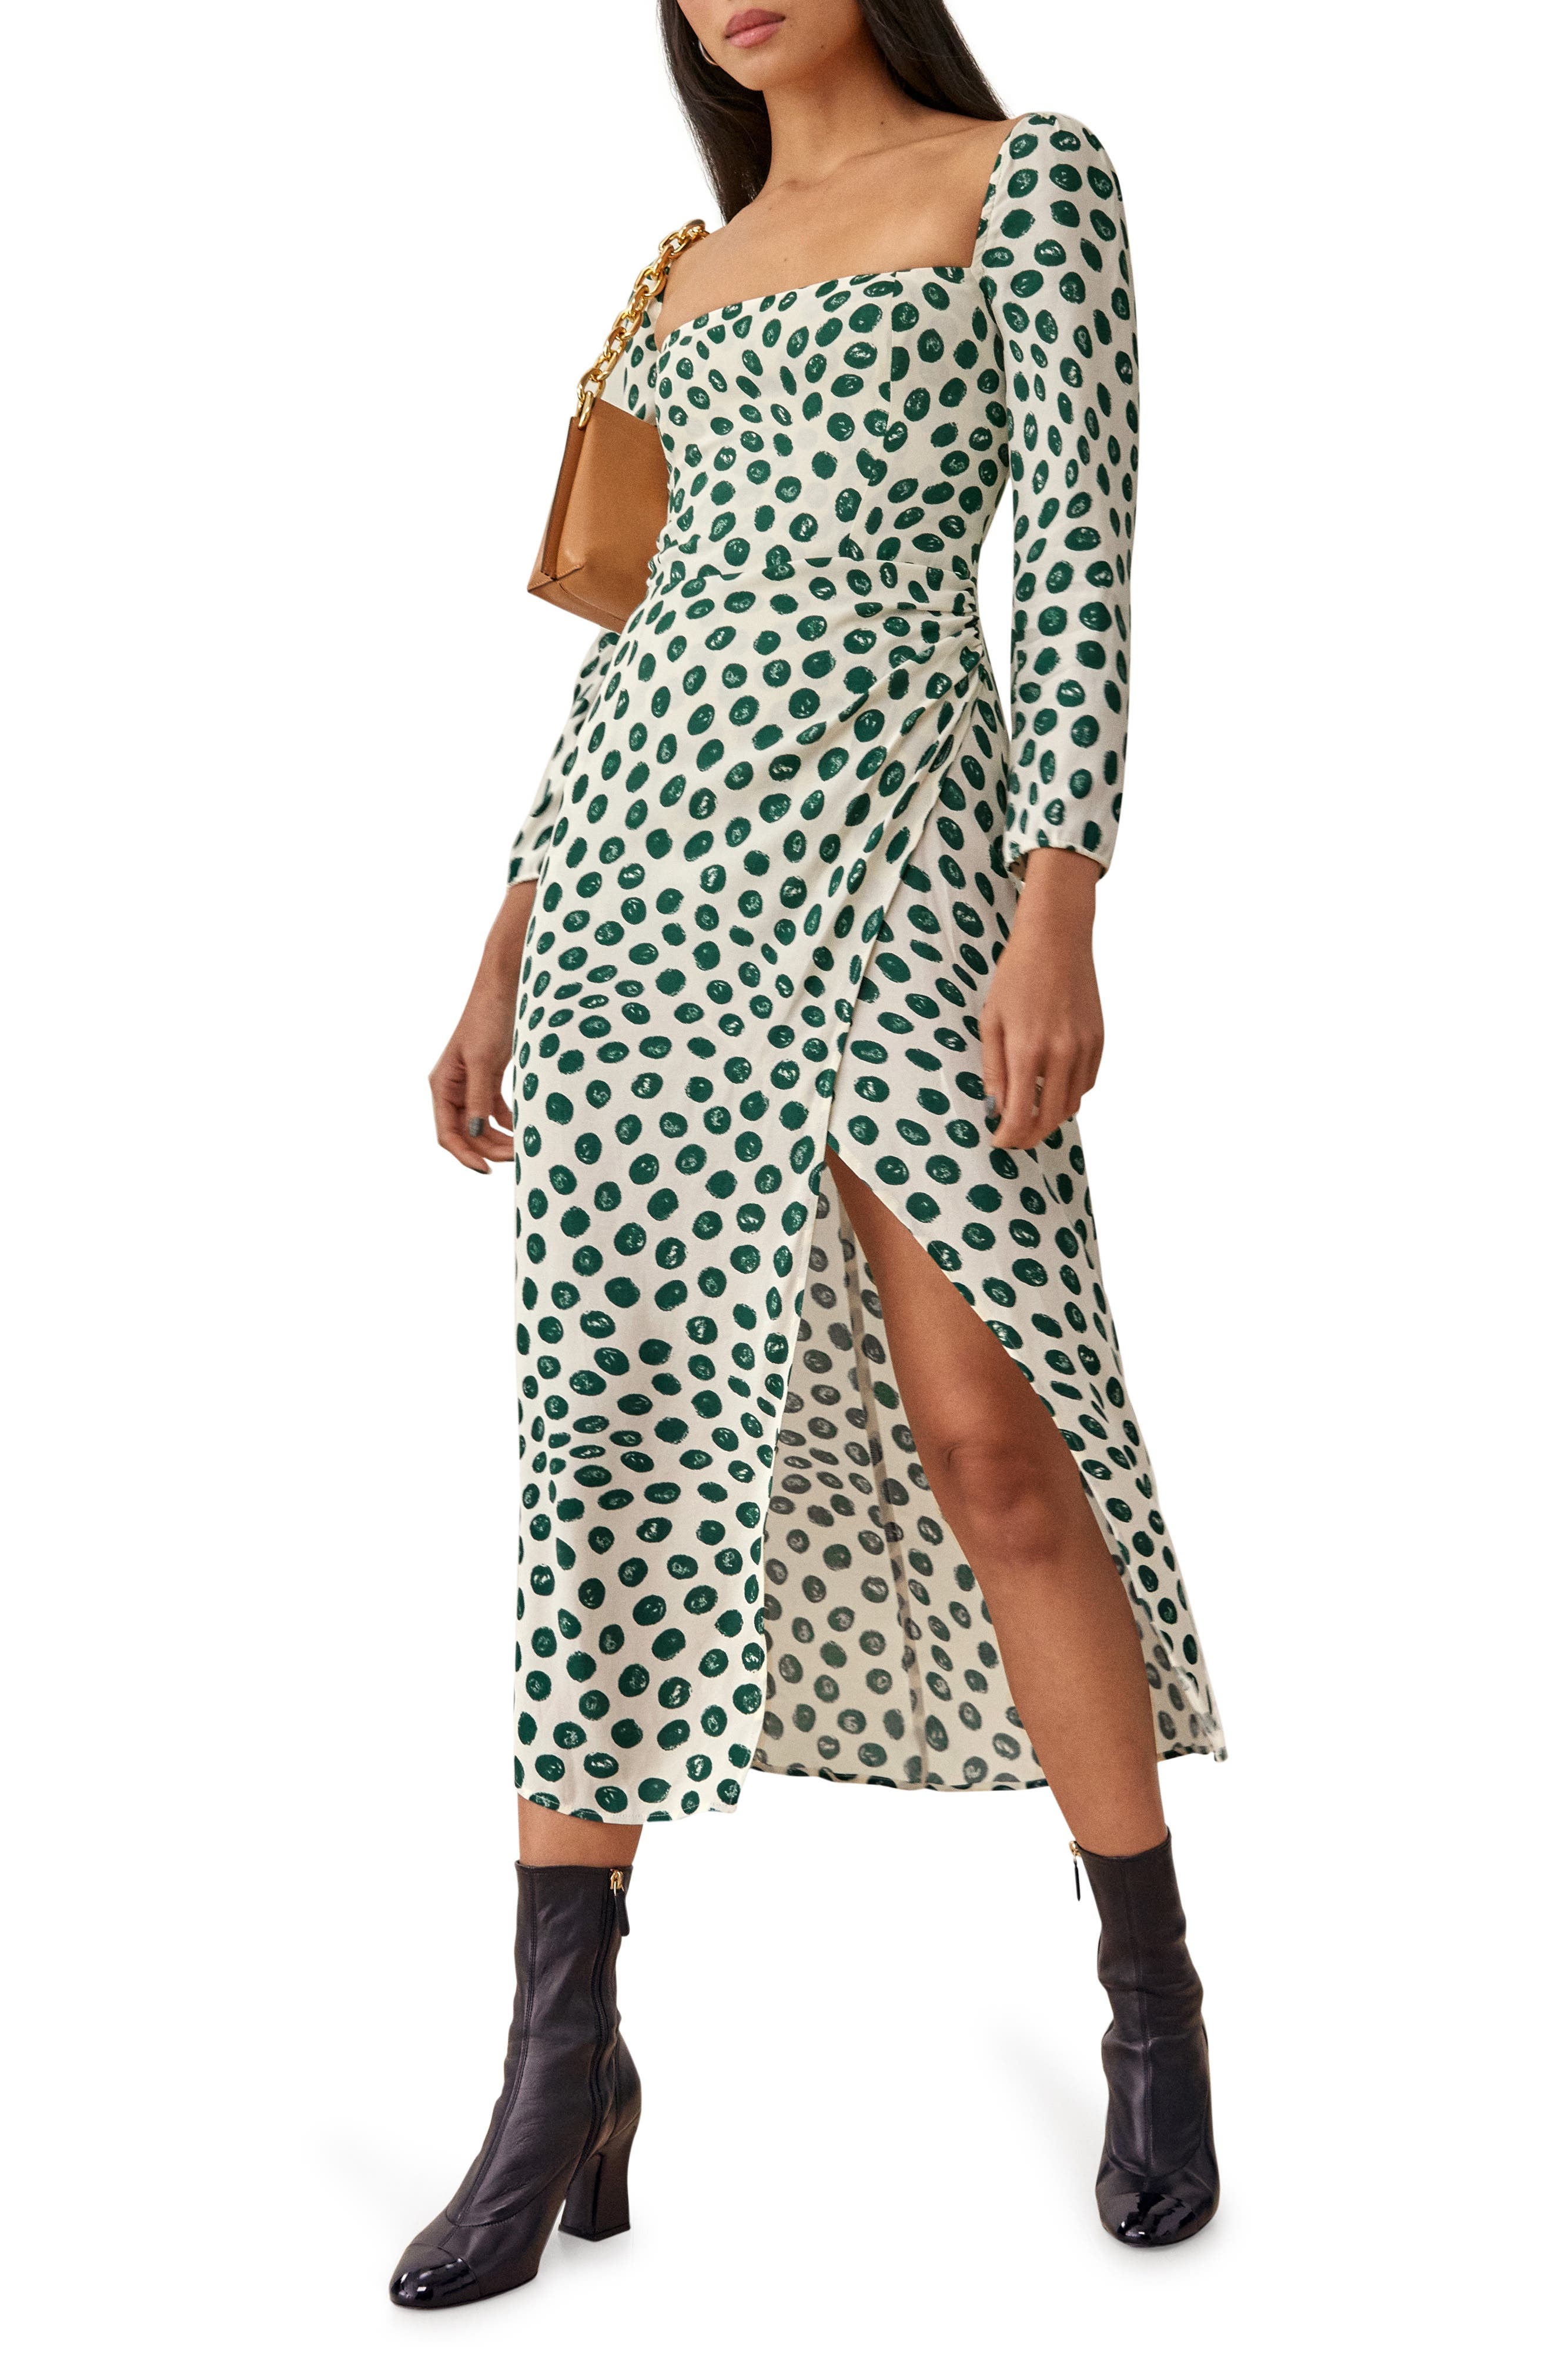 Jumper Dress Polka Dot Dresses Size 6-18 Sundress Long Sleeve Fitted Women Mini